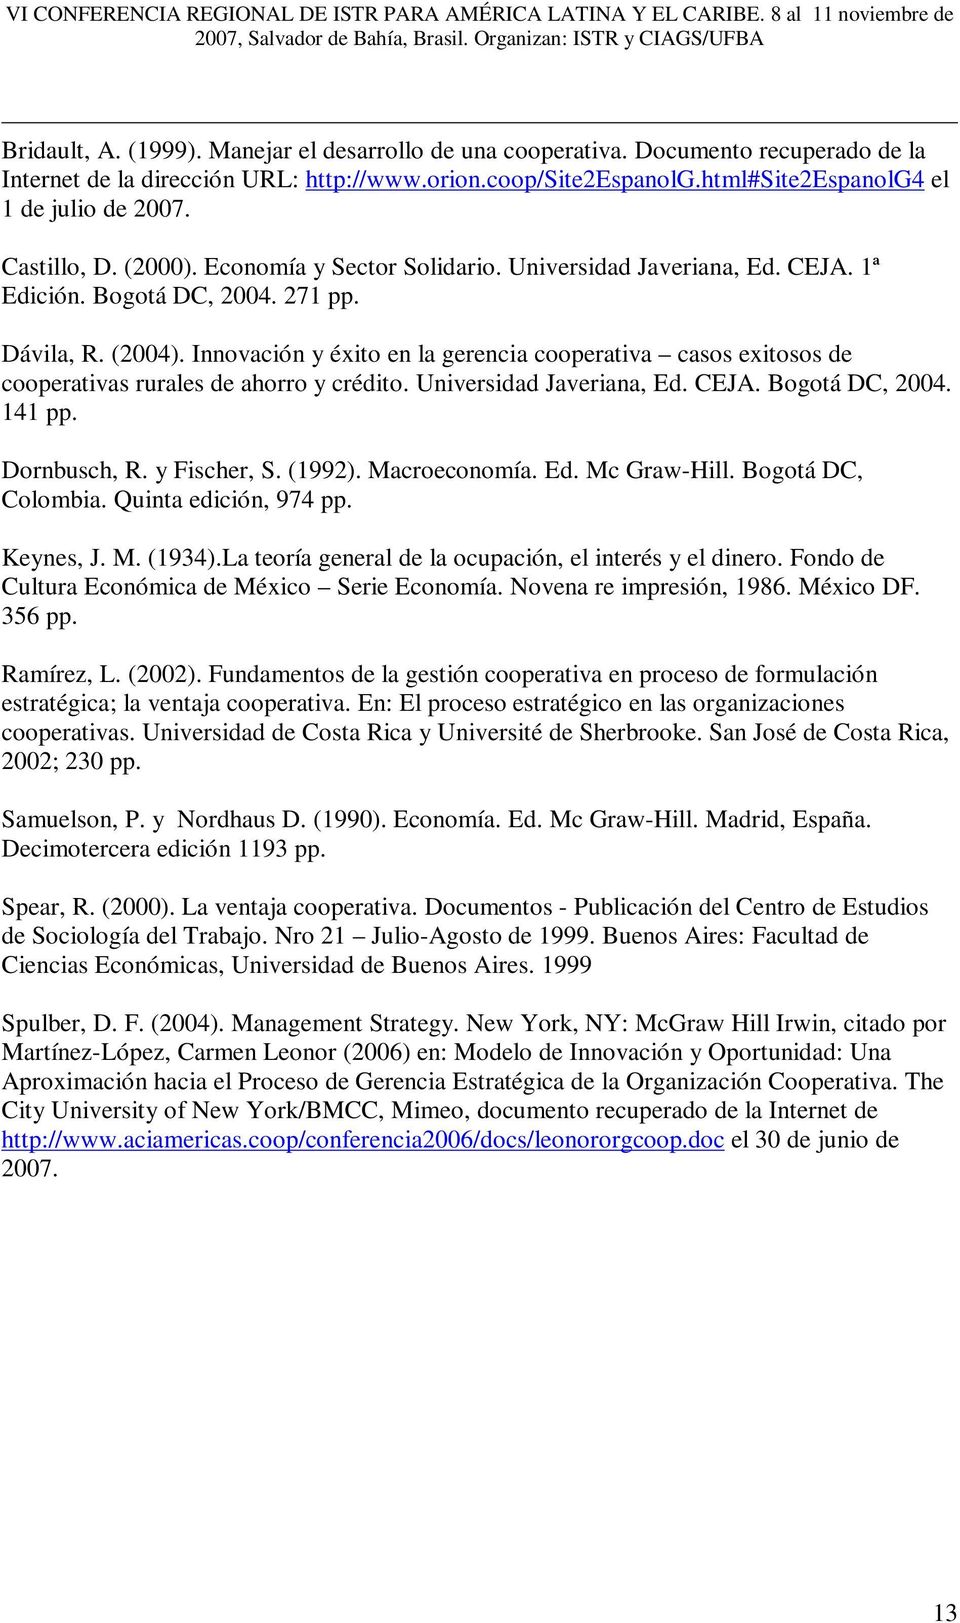 CEJA. ª Edició. Bogotá DC, 2004. 27 pp. Dávila, R. (2004). Iovació y éxito e la gerecia cooperativa casos exitosos de cooperativas rurales de ahorro y crédito. Uiversidad Javeriaa, Ed. CEJA.